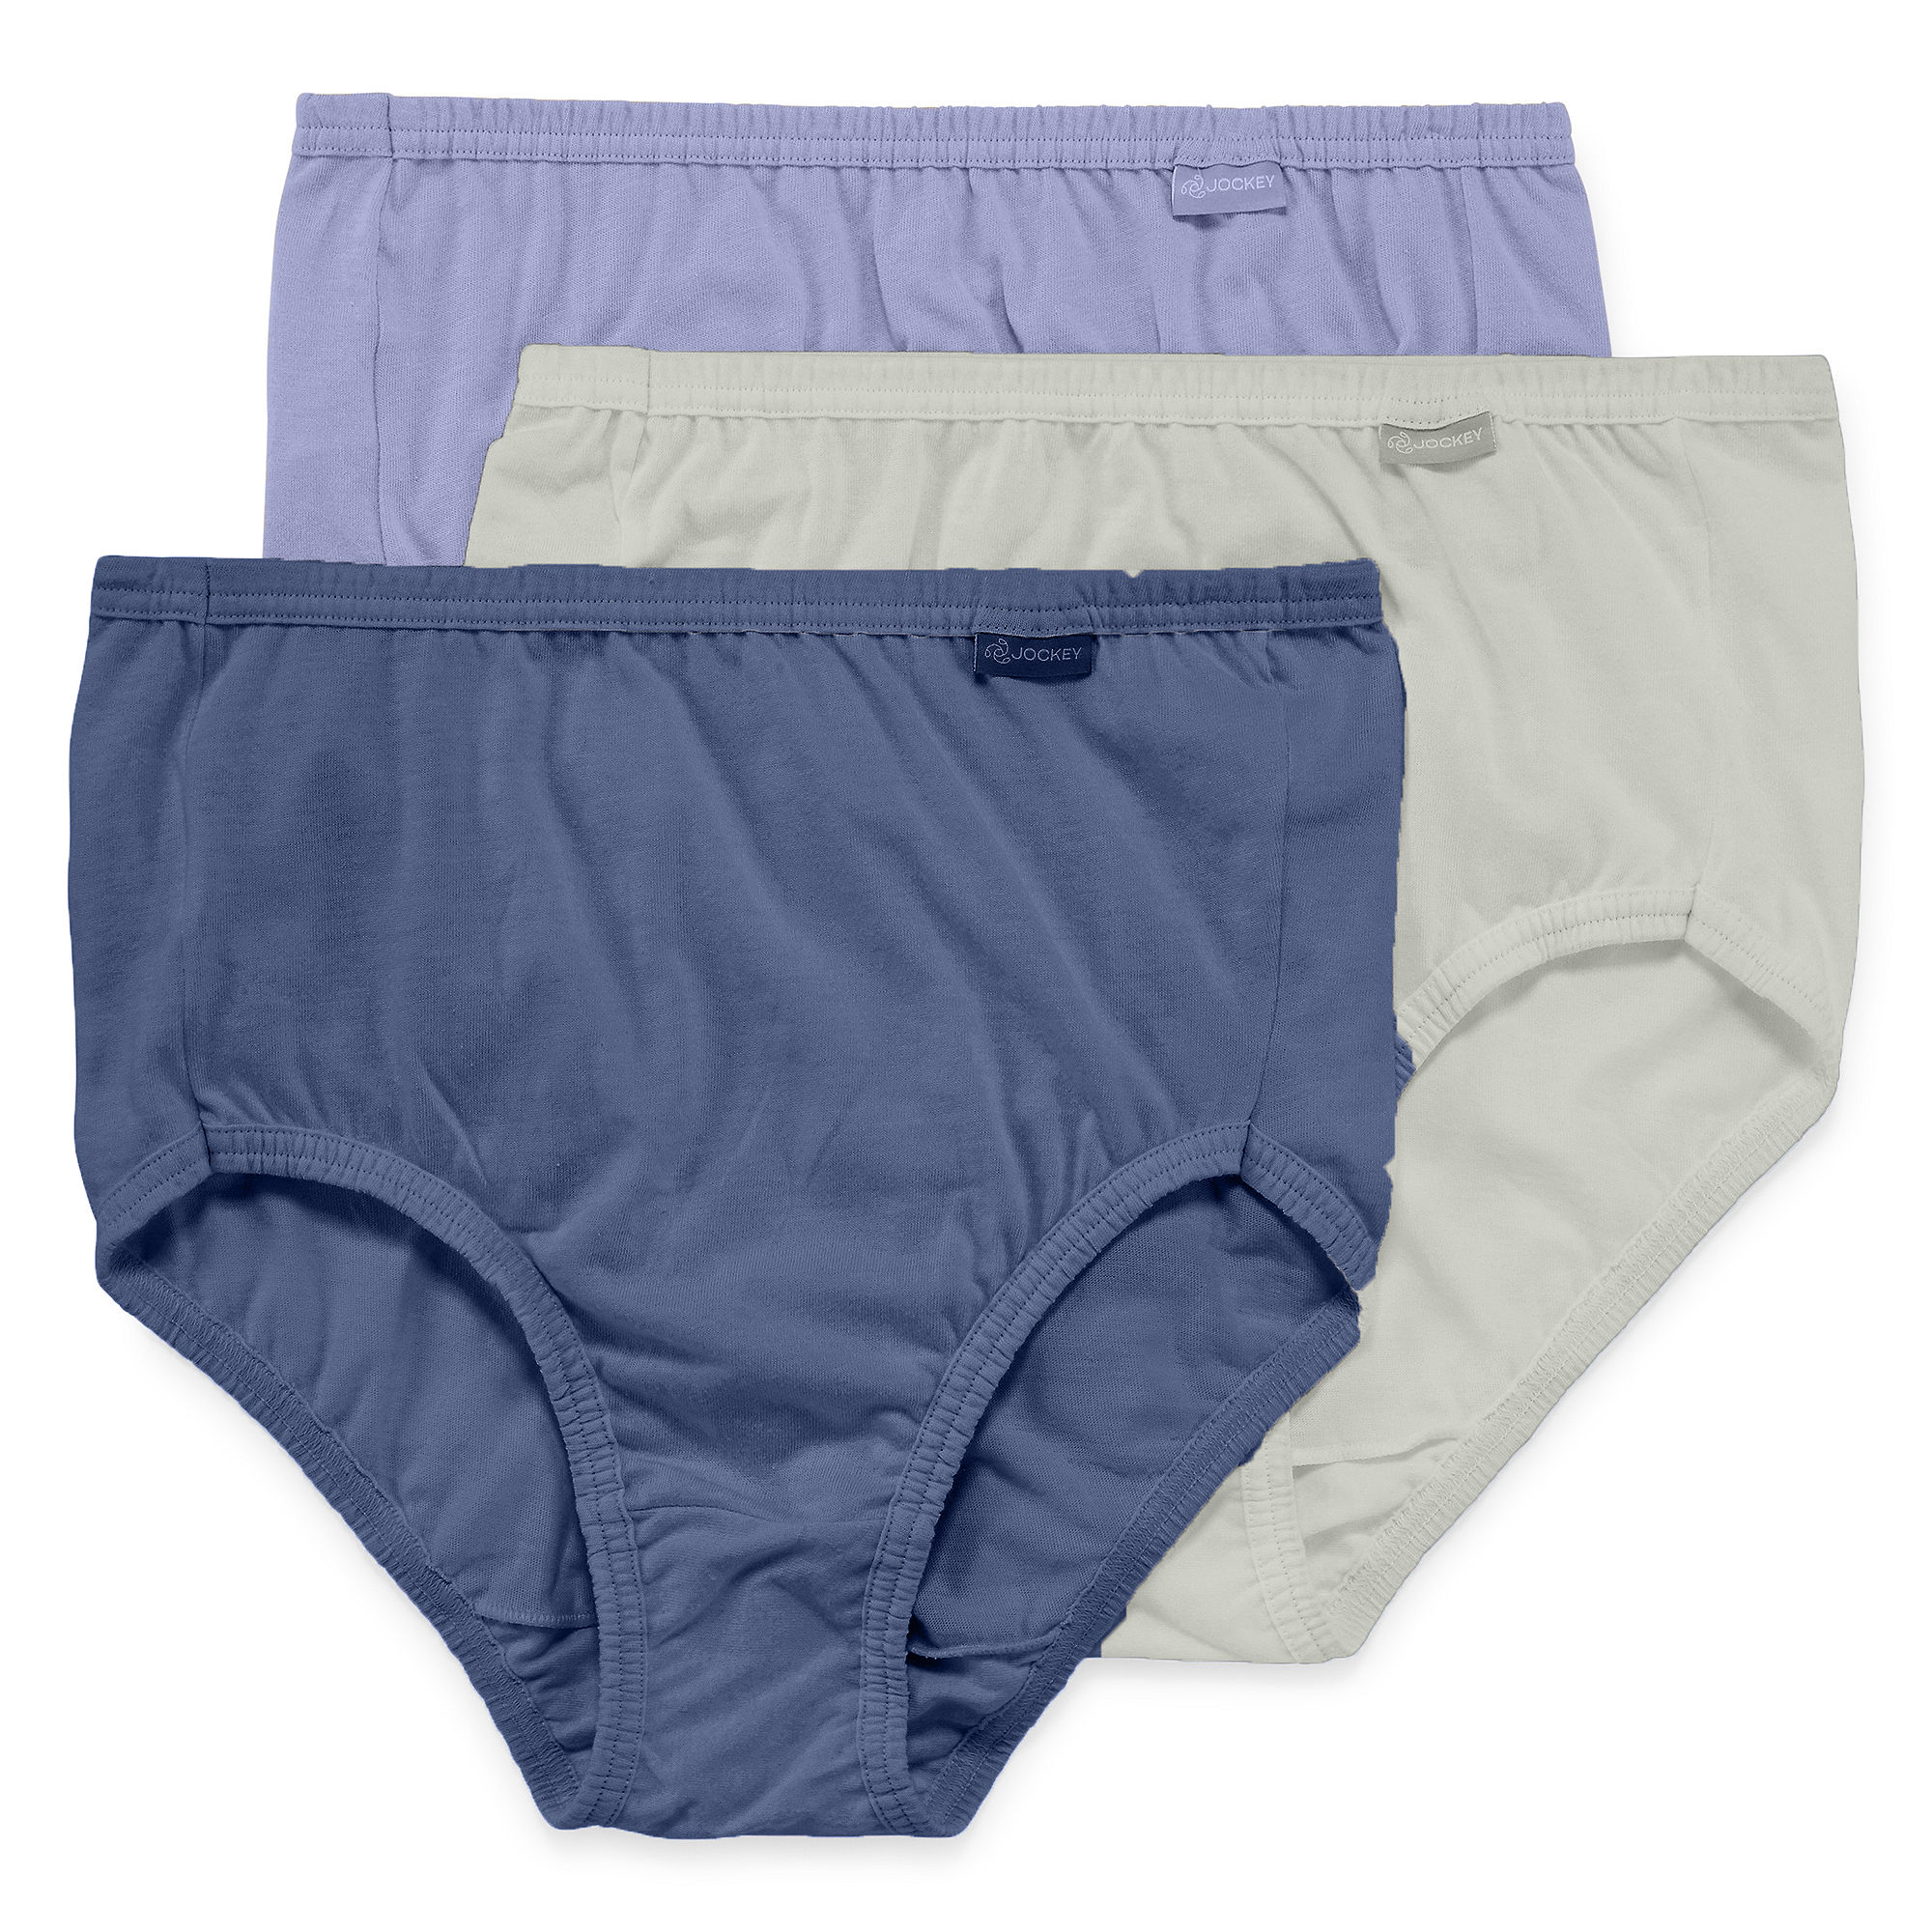 Plus Size Panties | Plus Size Briefs | Plus Size Now